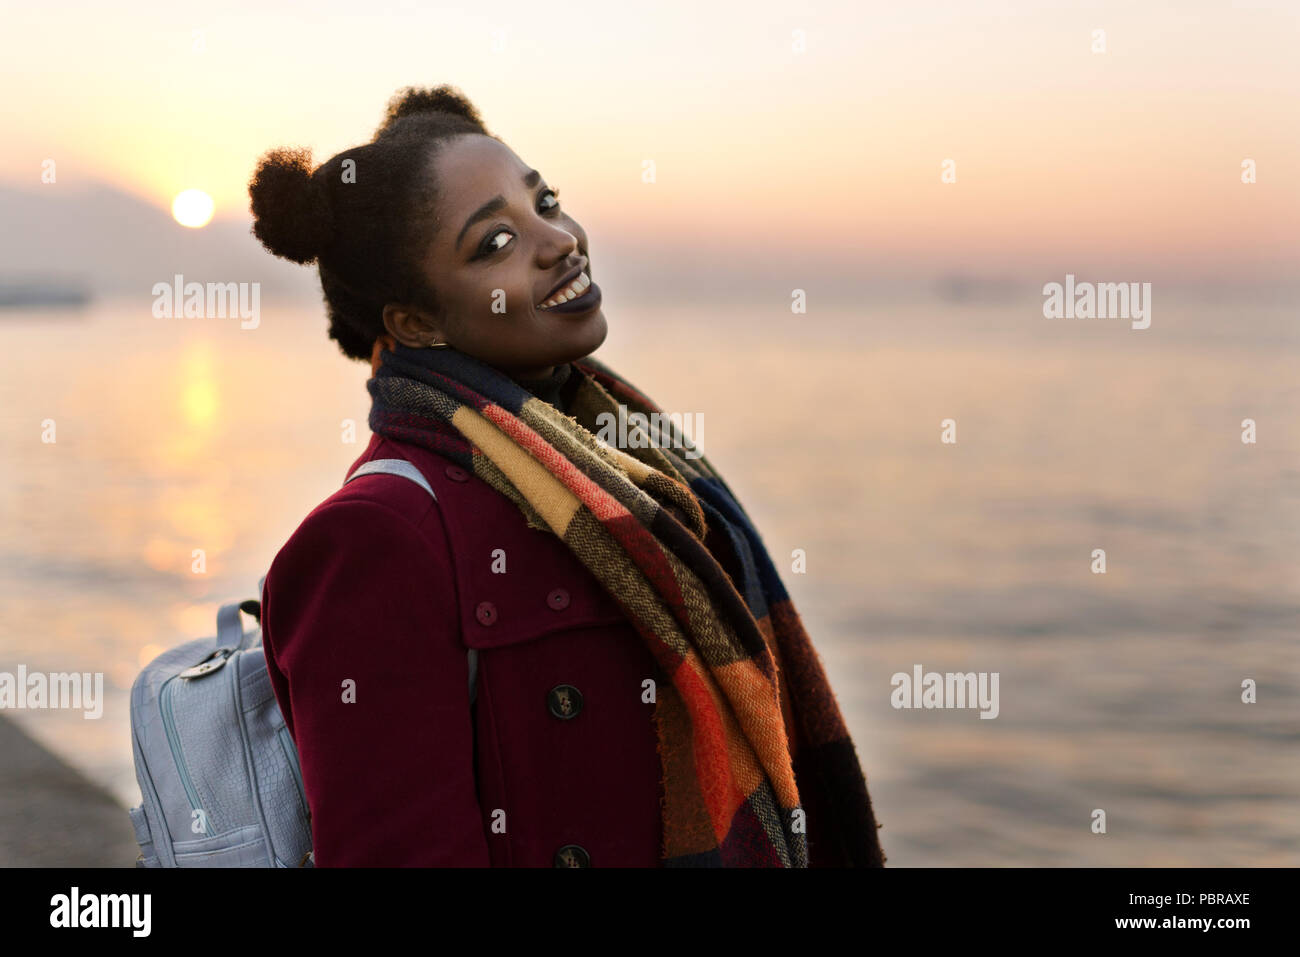 Ritratto di un 25 anni donna africana con un rivestimento di colore rosso e la trama vicino al bordo delle acque con un tramonto. Foto Stock